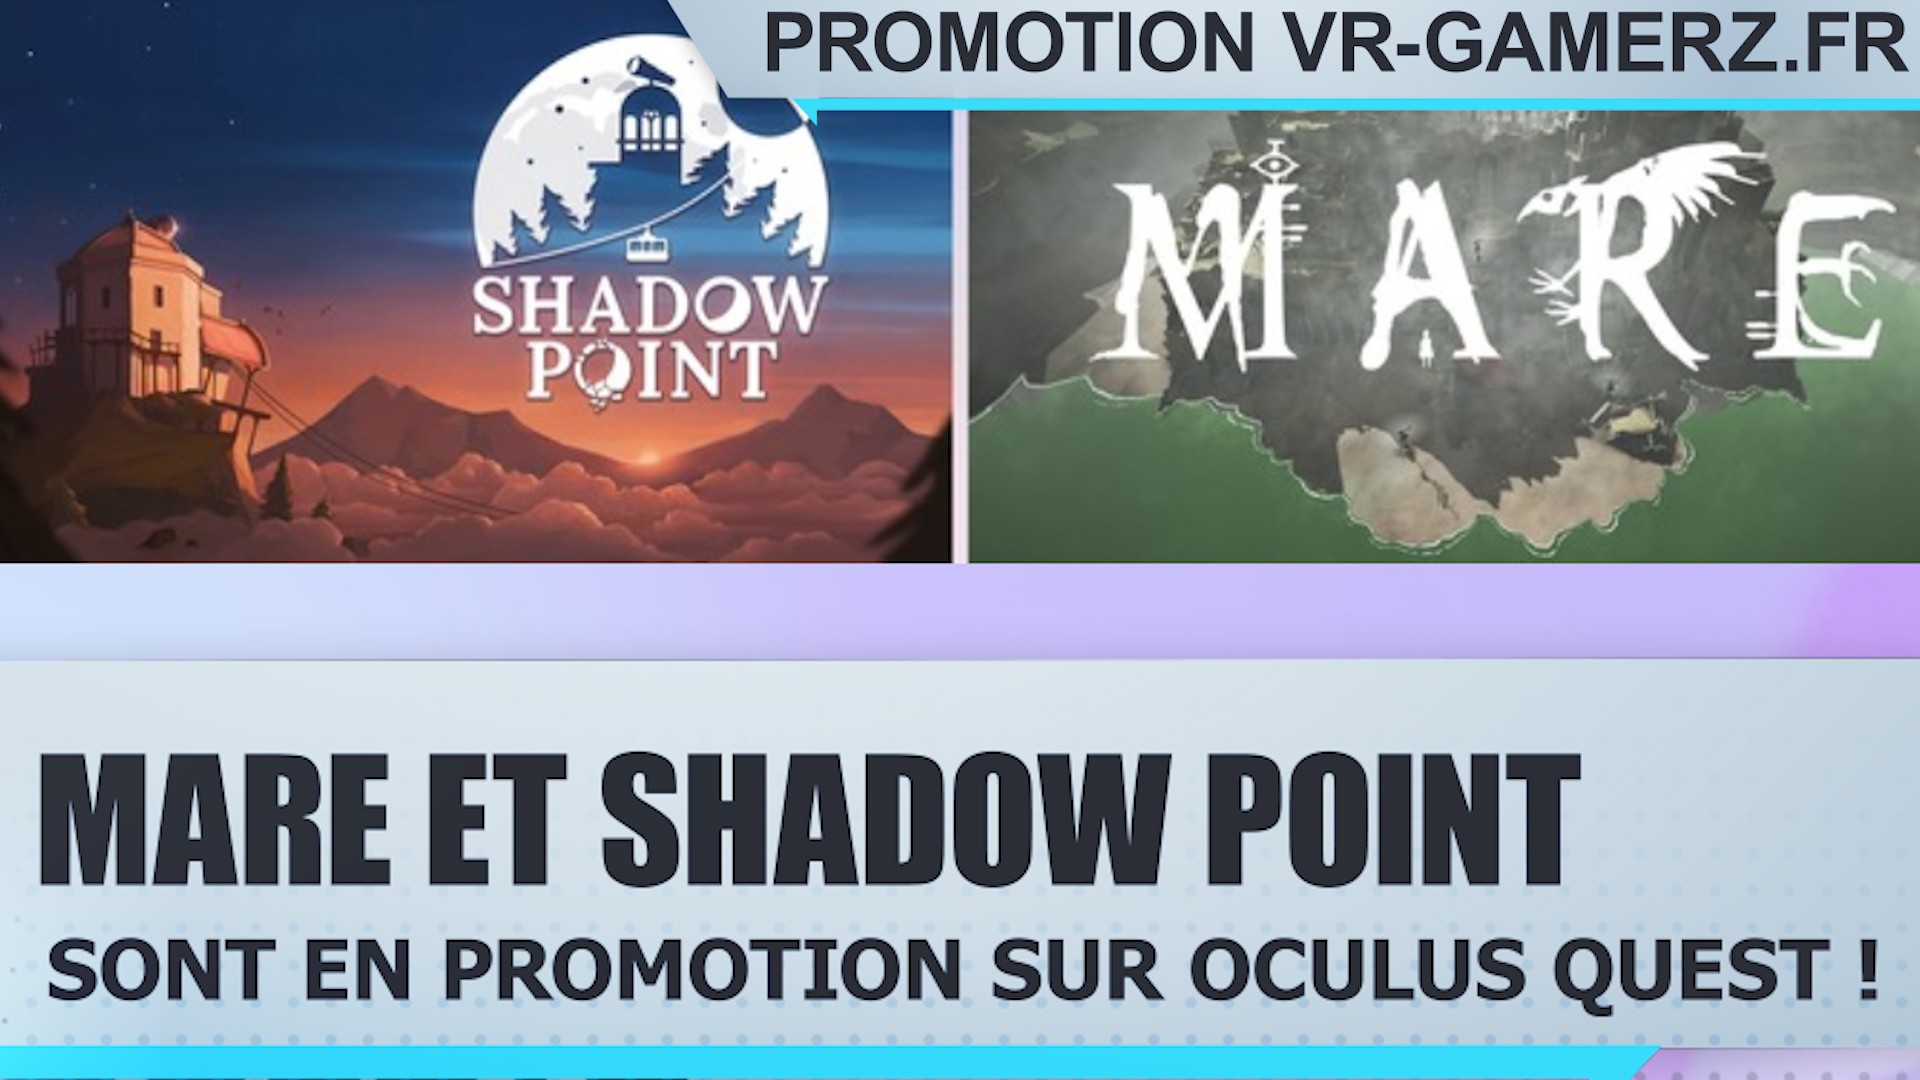 Mare et Shadow point sont en promotion sur Oculus quest !